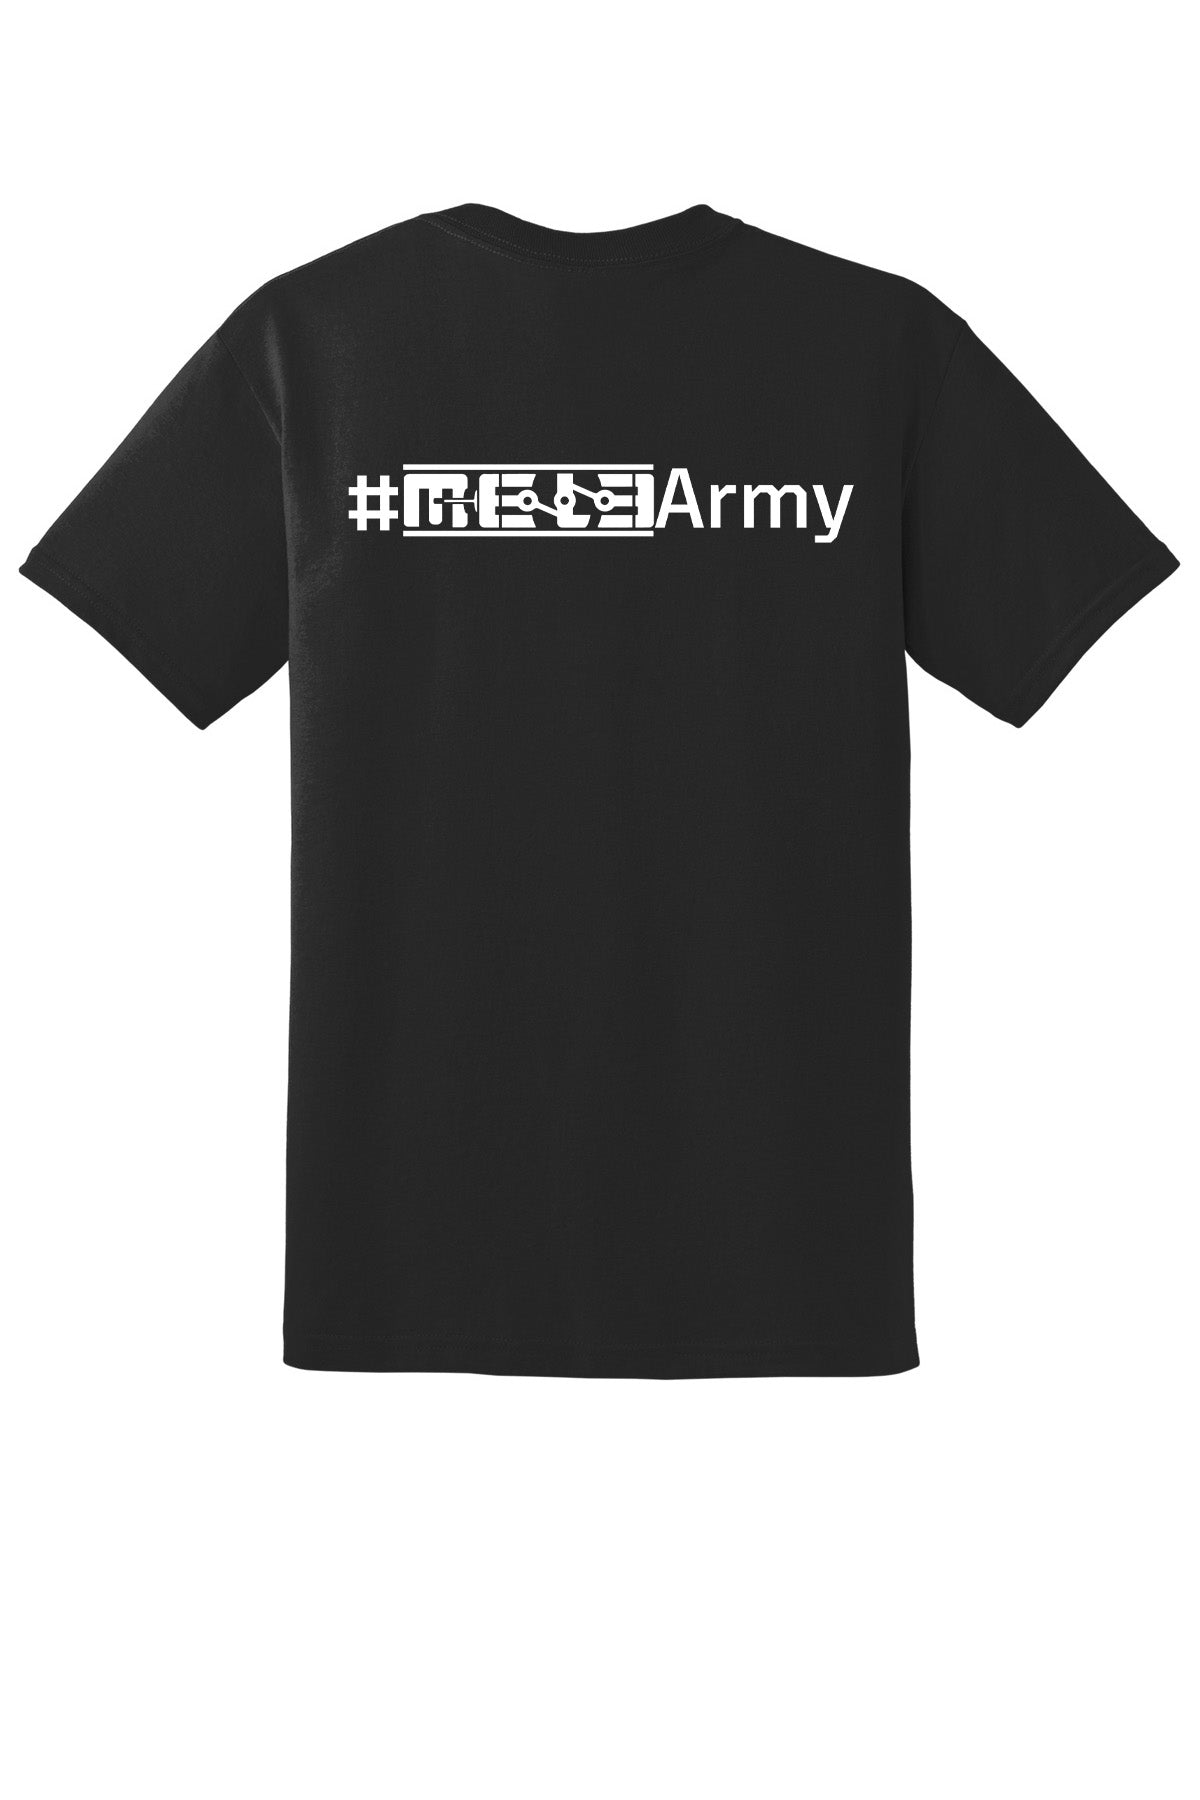 MeLe Army Shirt